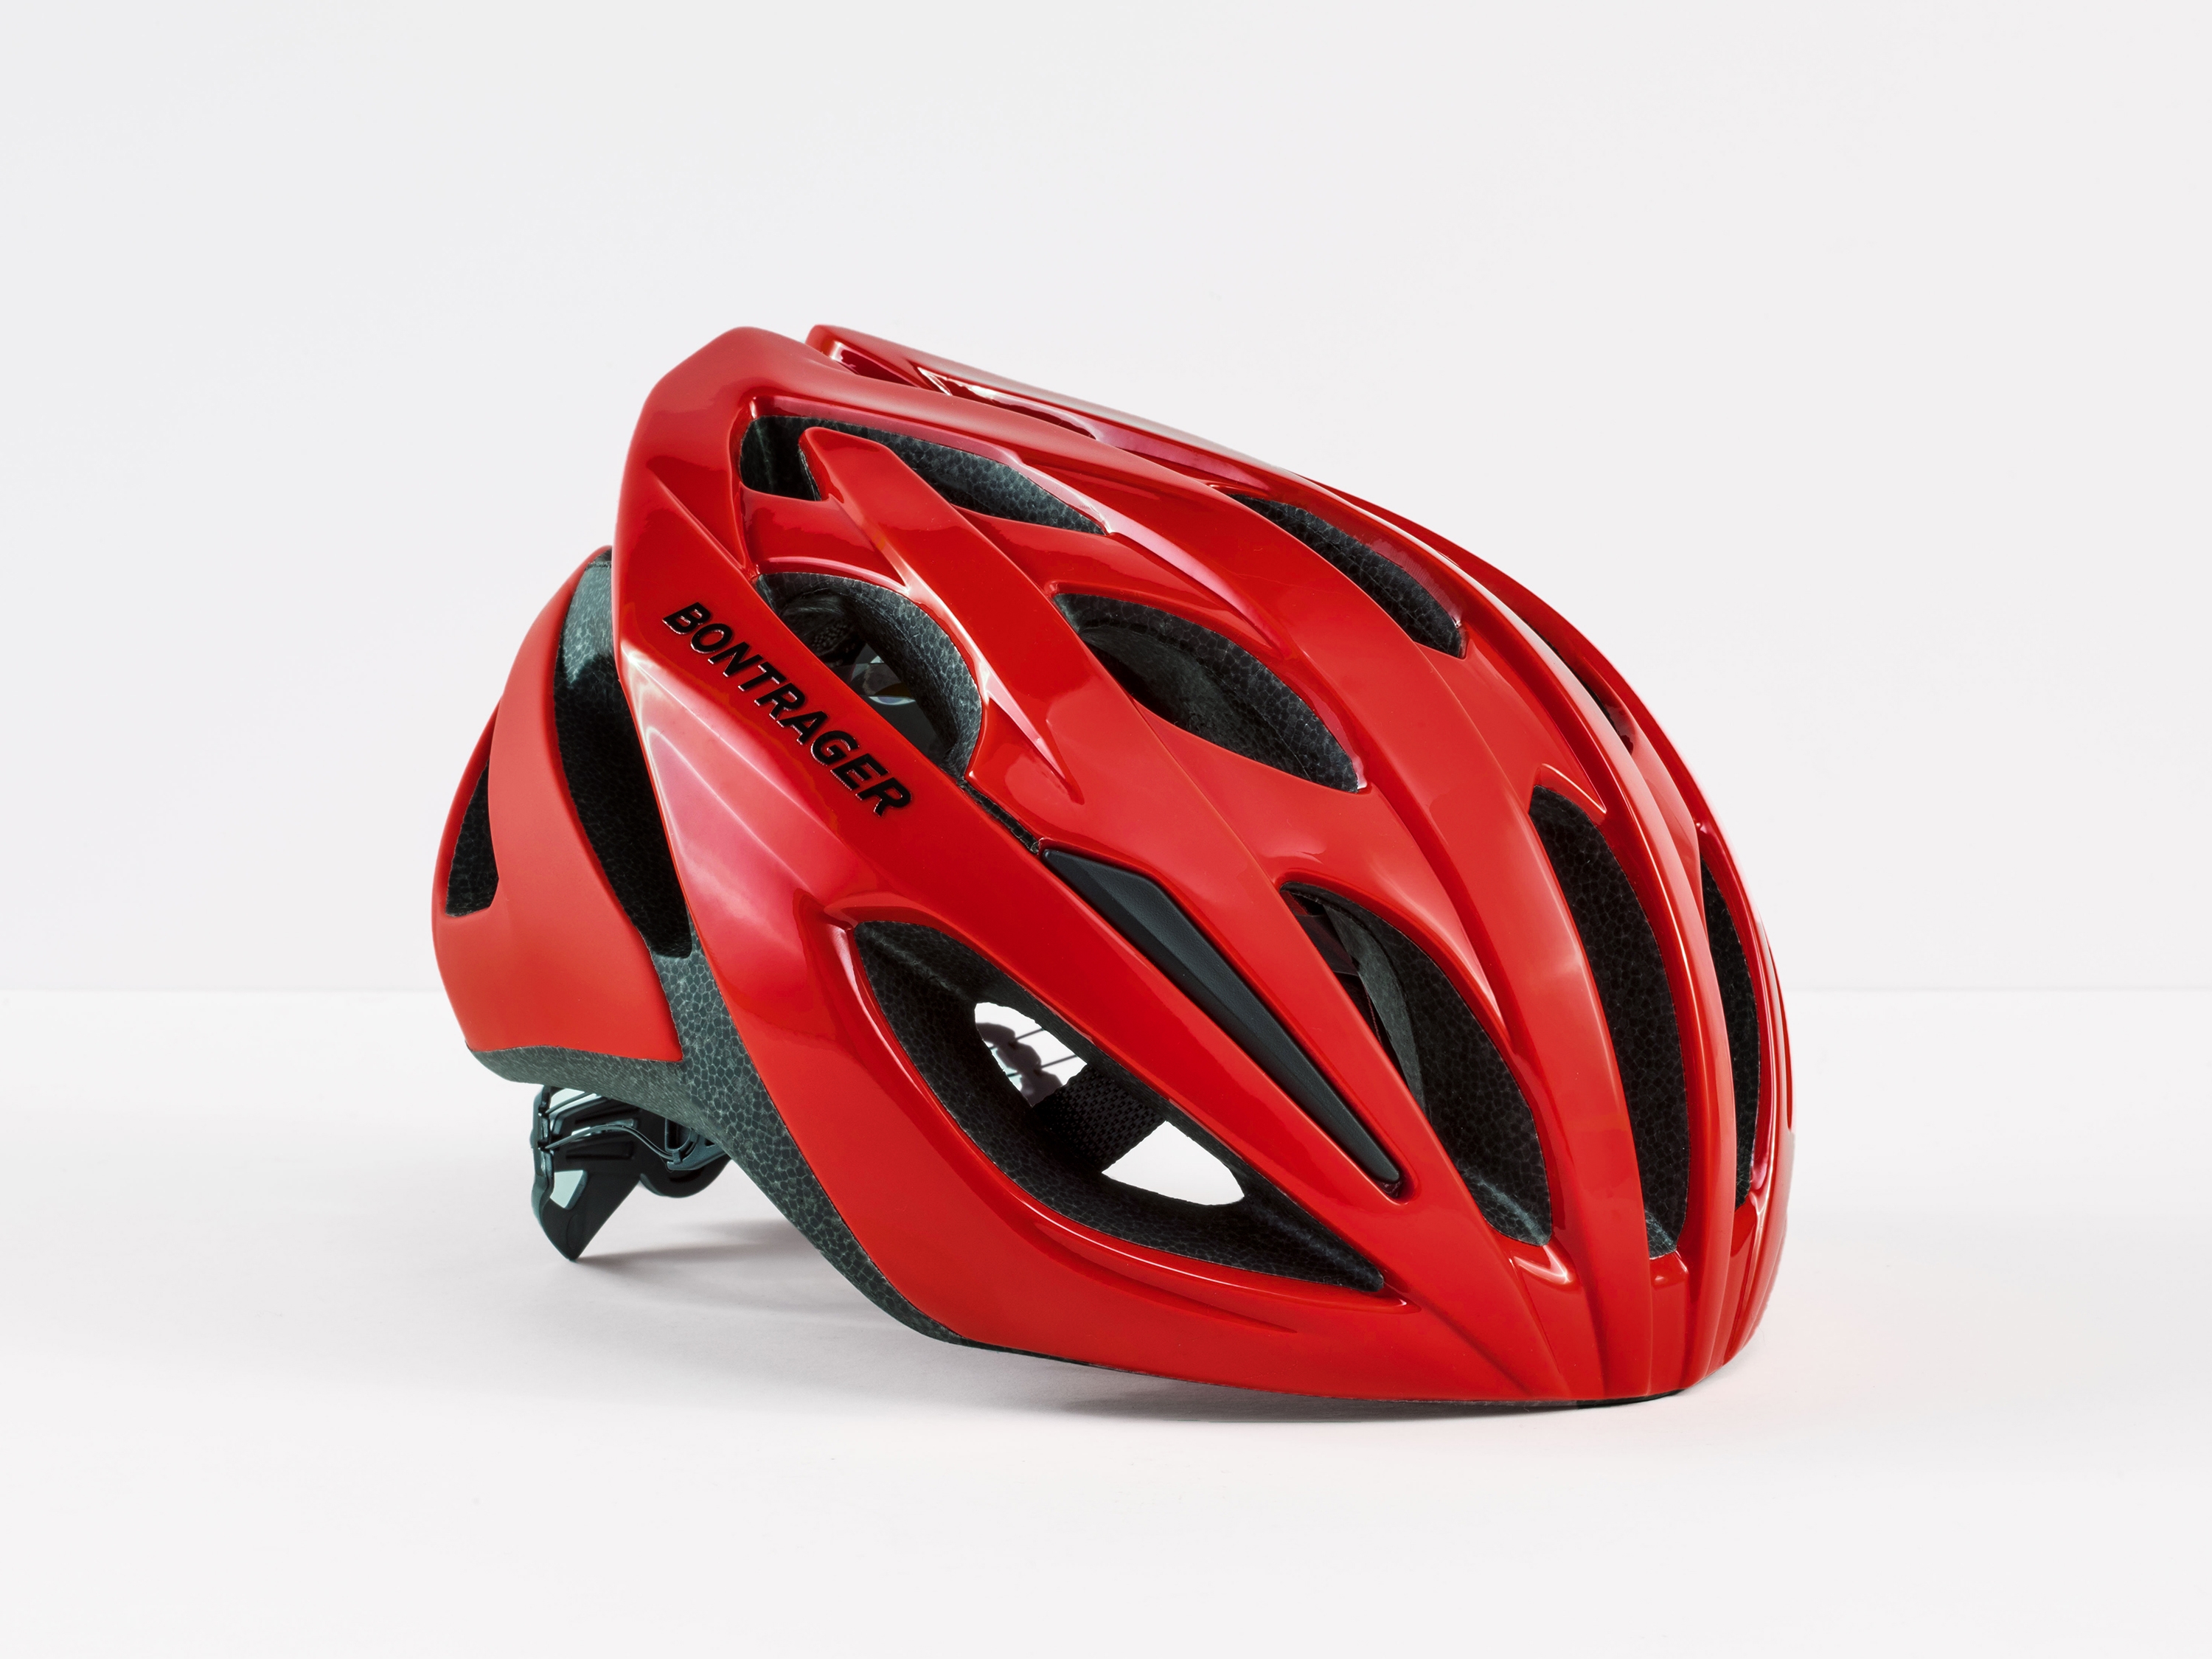 bontrager starvos mips women's road bike helmet